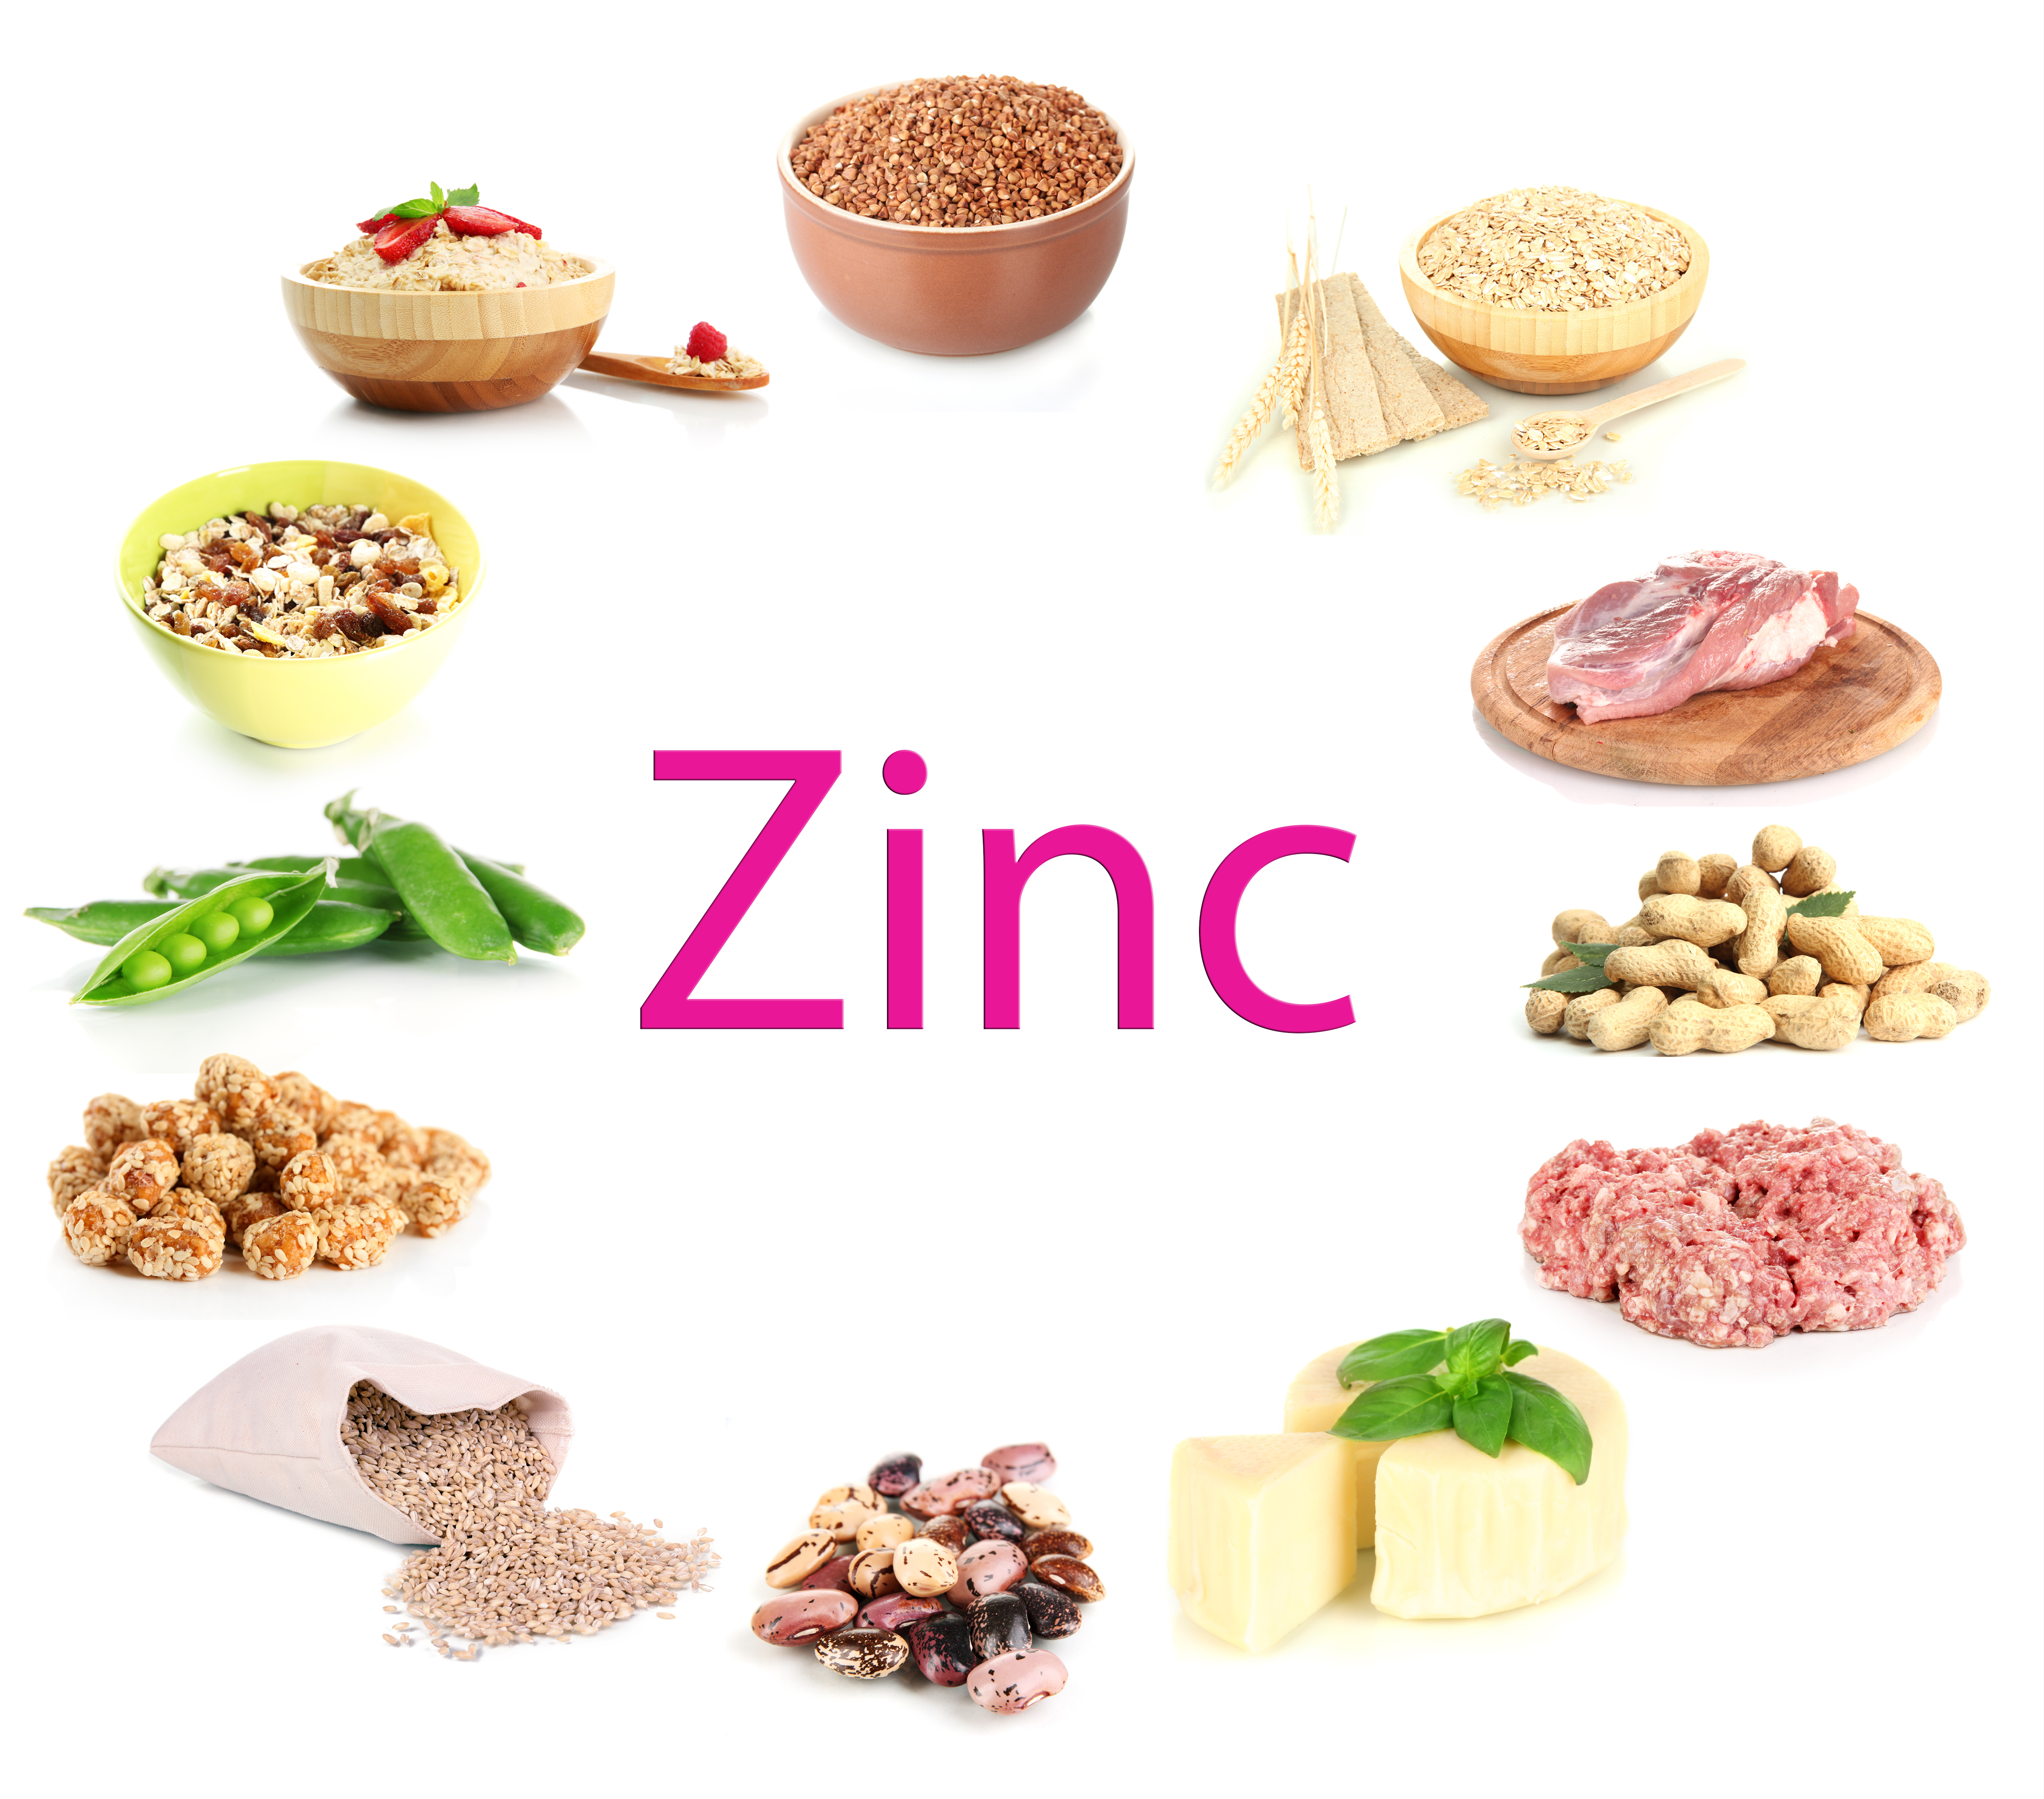 Foods high in Zinc